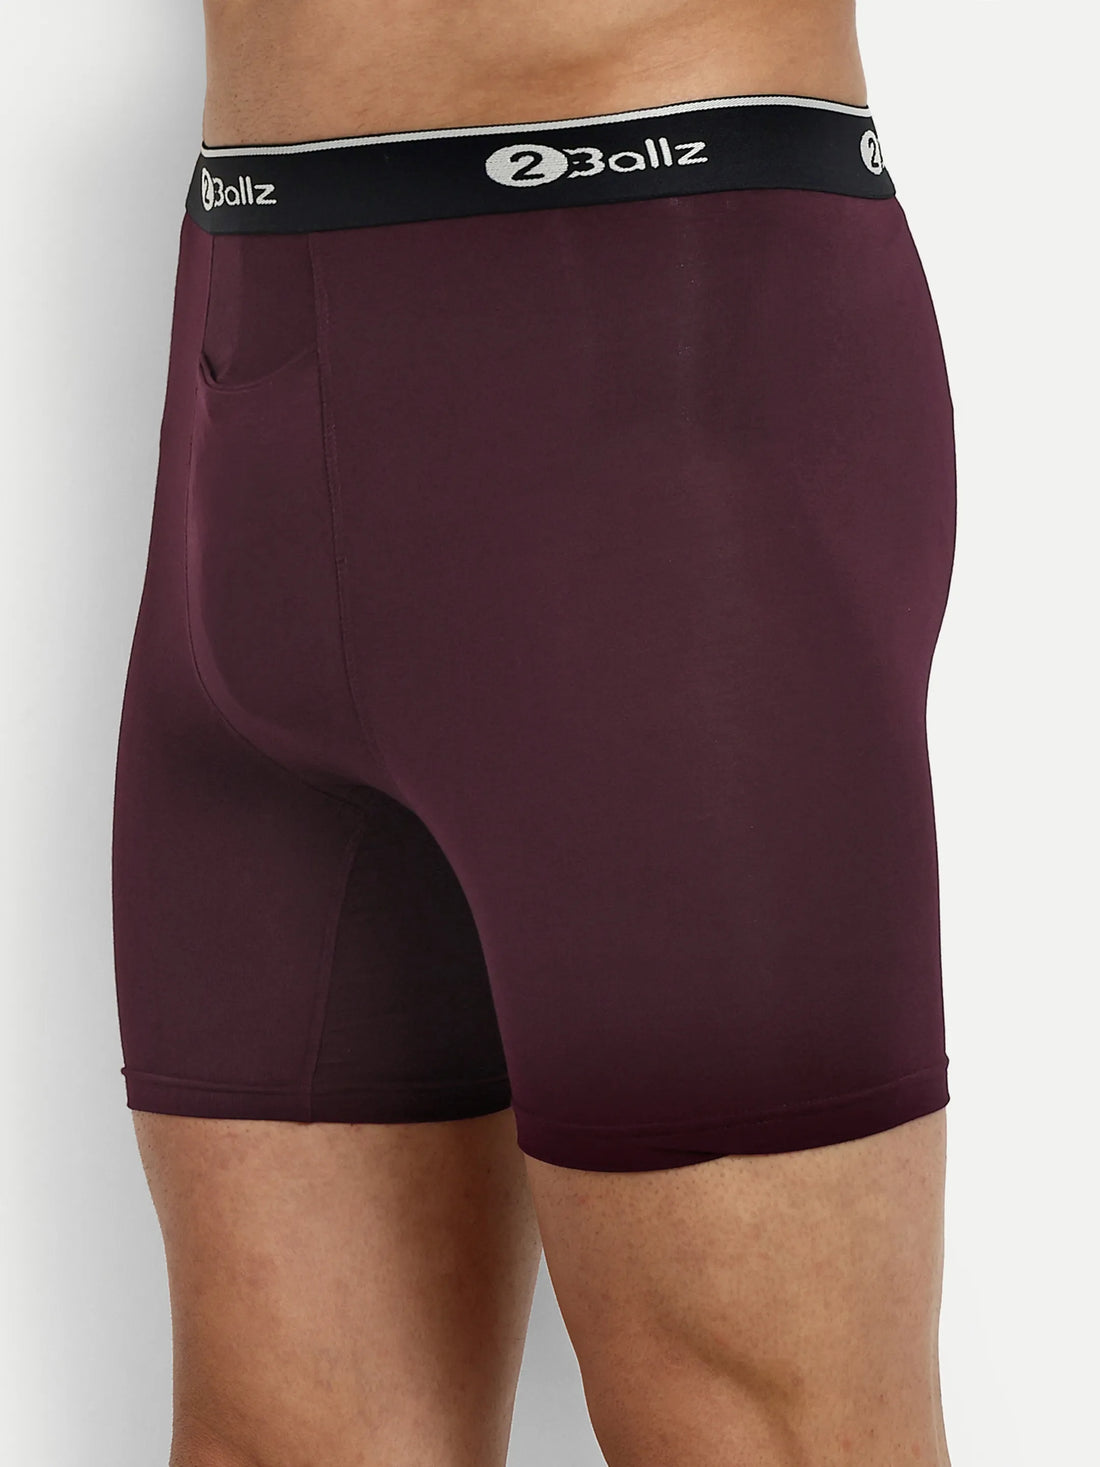 Men's Pouch Underwear  2Ballz Boxer Brief with Built-in Pouch